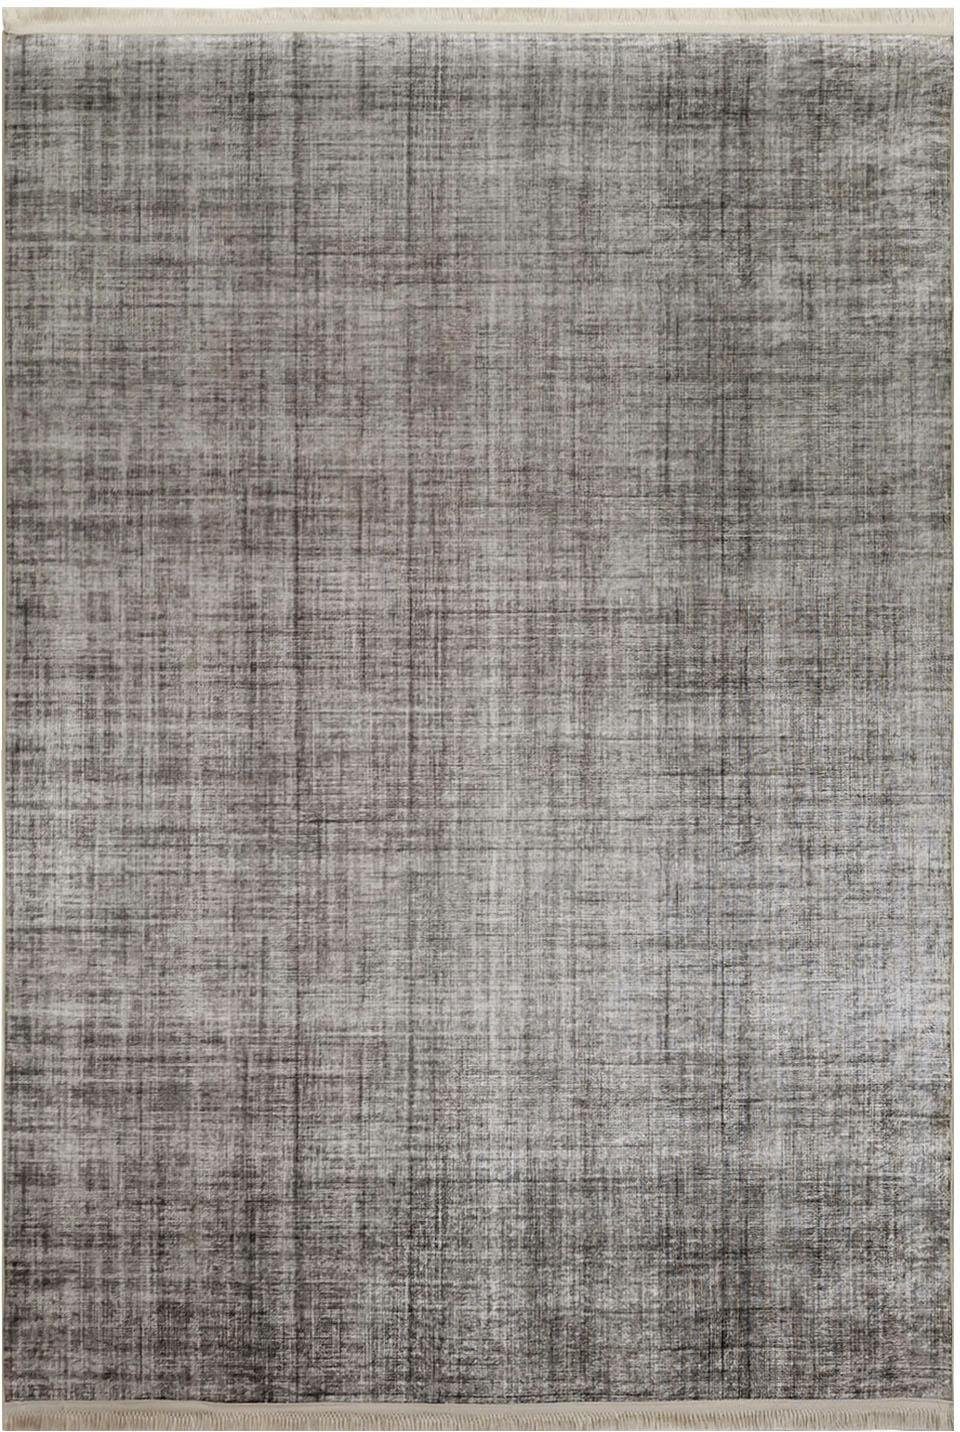 RESITAL The Voice of Carpet Vloerkleed Sultan 002 Platweefsel, gedessineerd, met franje, wasbaar, woonkamer